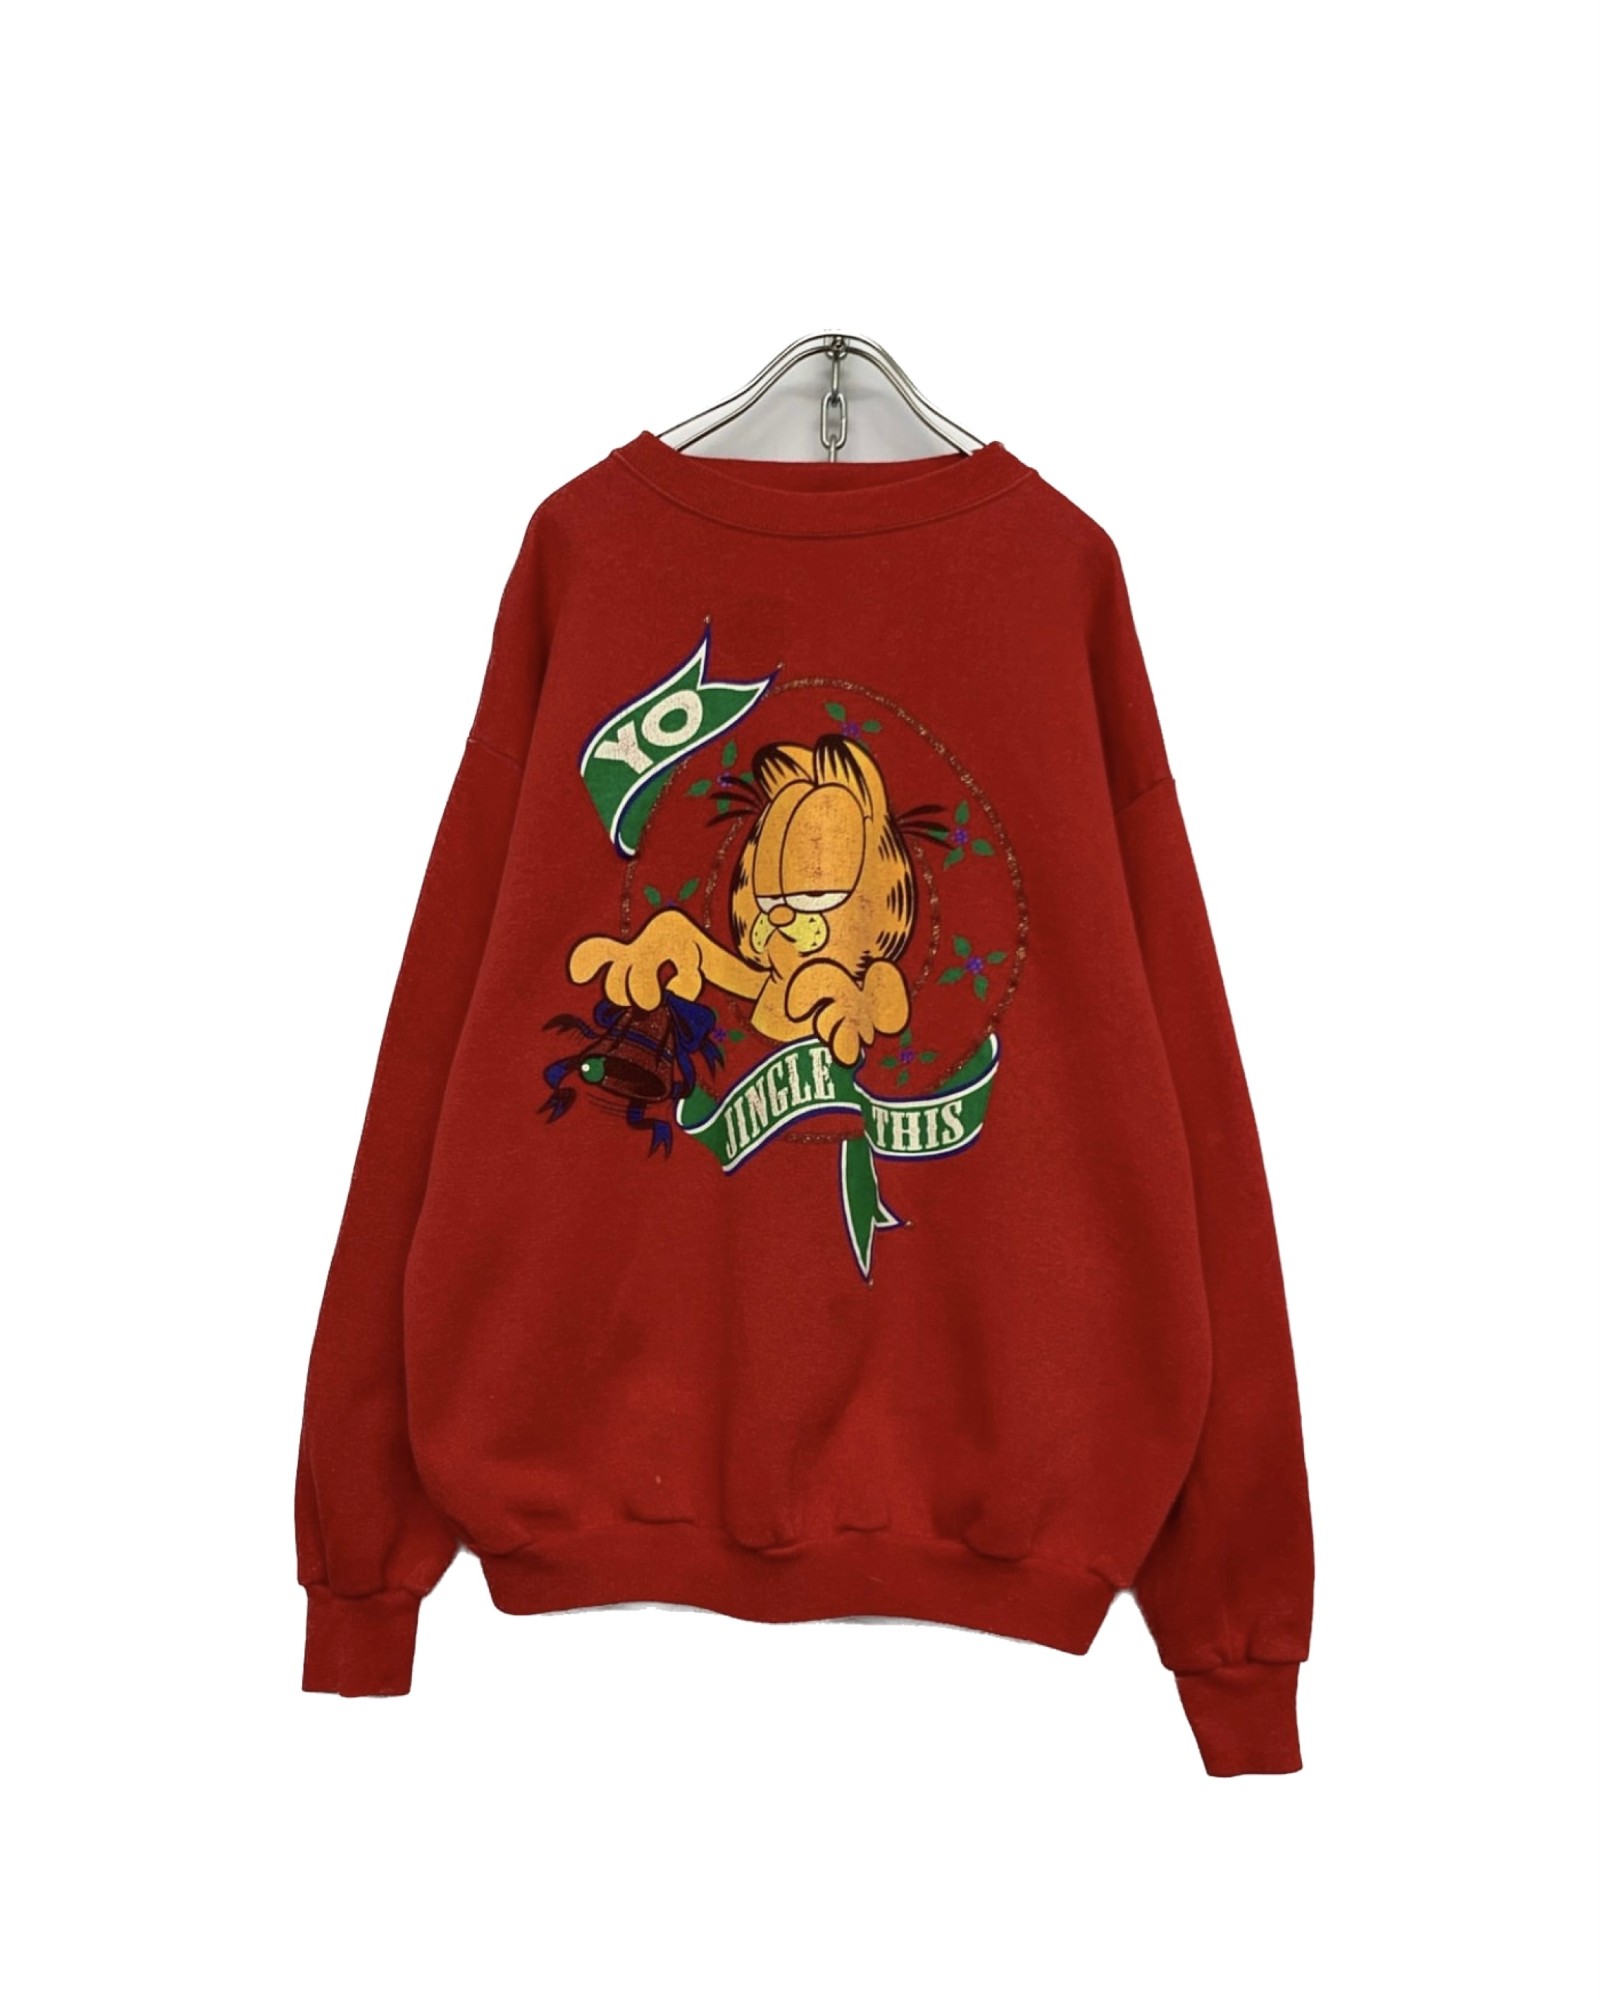 1990’s “Garfield” Print Sweat Shirt